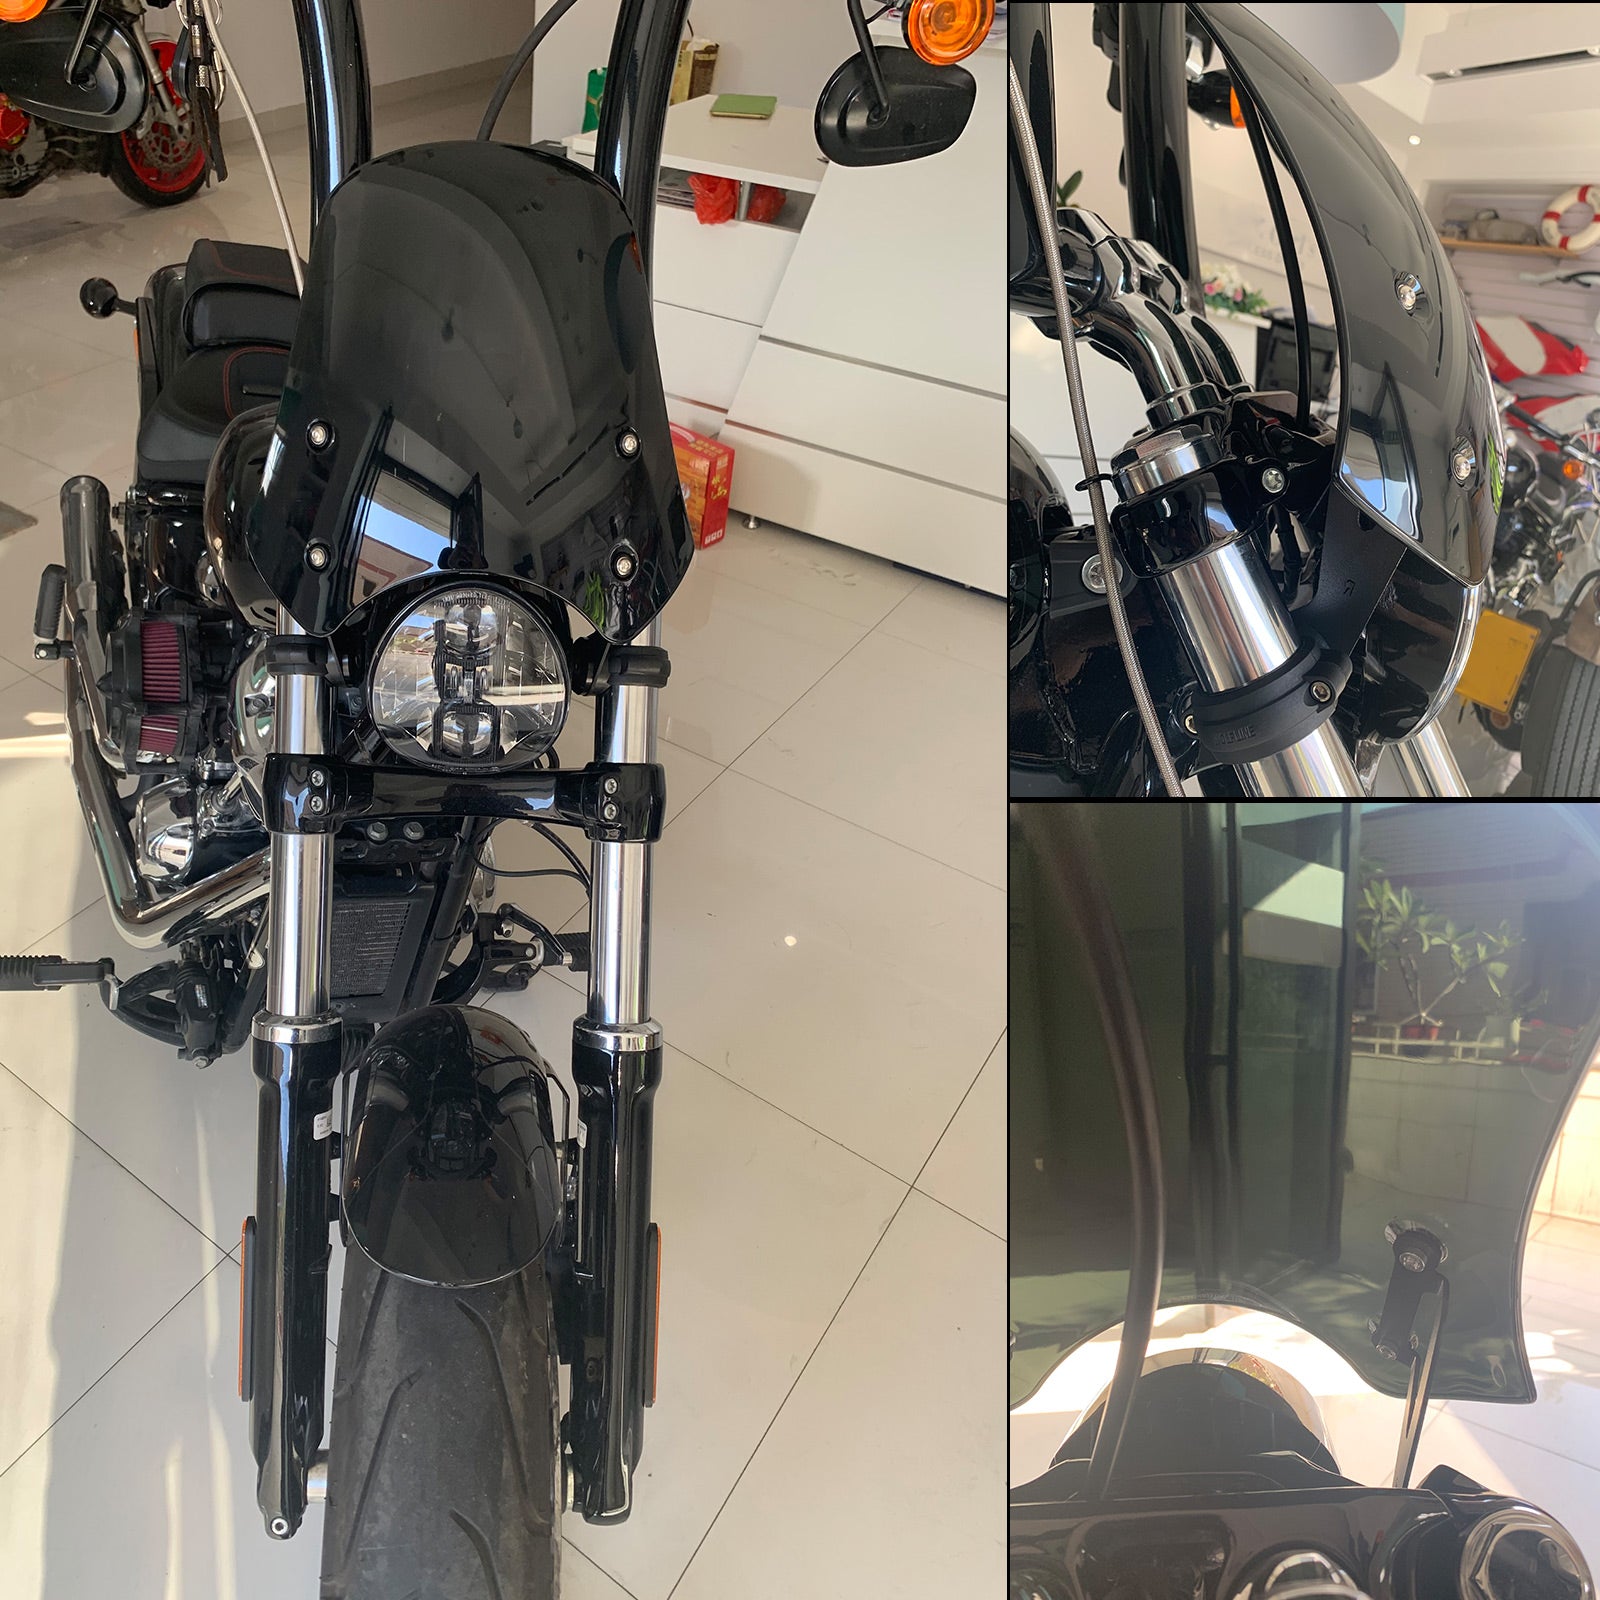 ABS-Motorrad-Windschutzscheibe für Harley Dyna Softail-Modelle, Schwarz, generisch